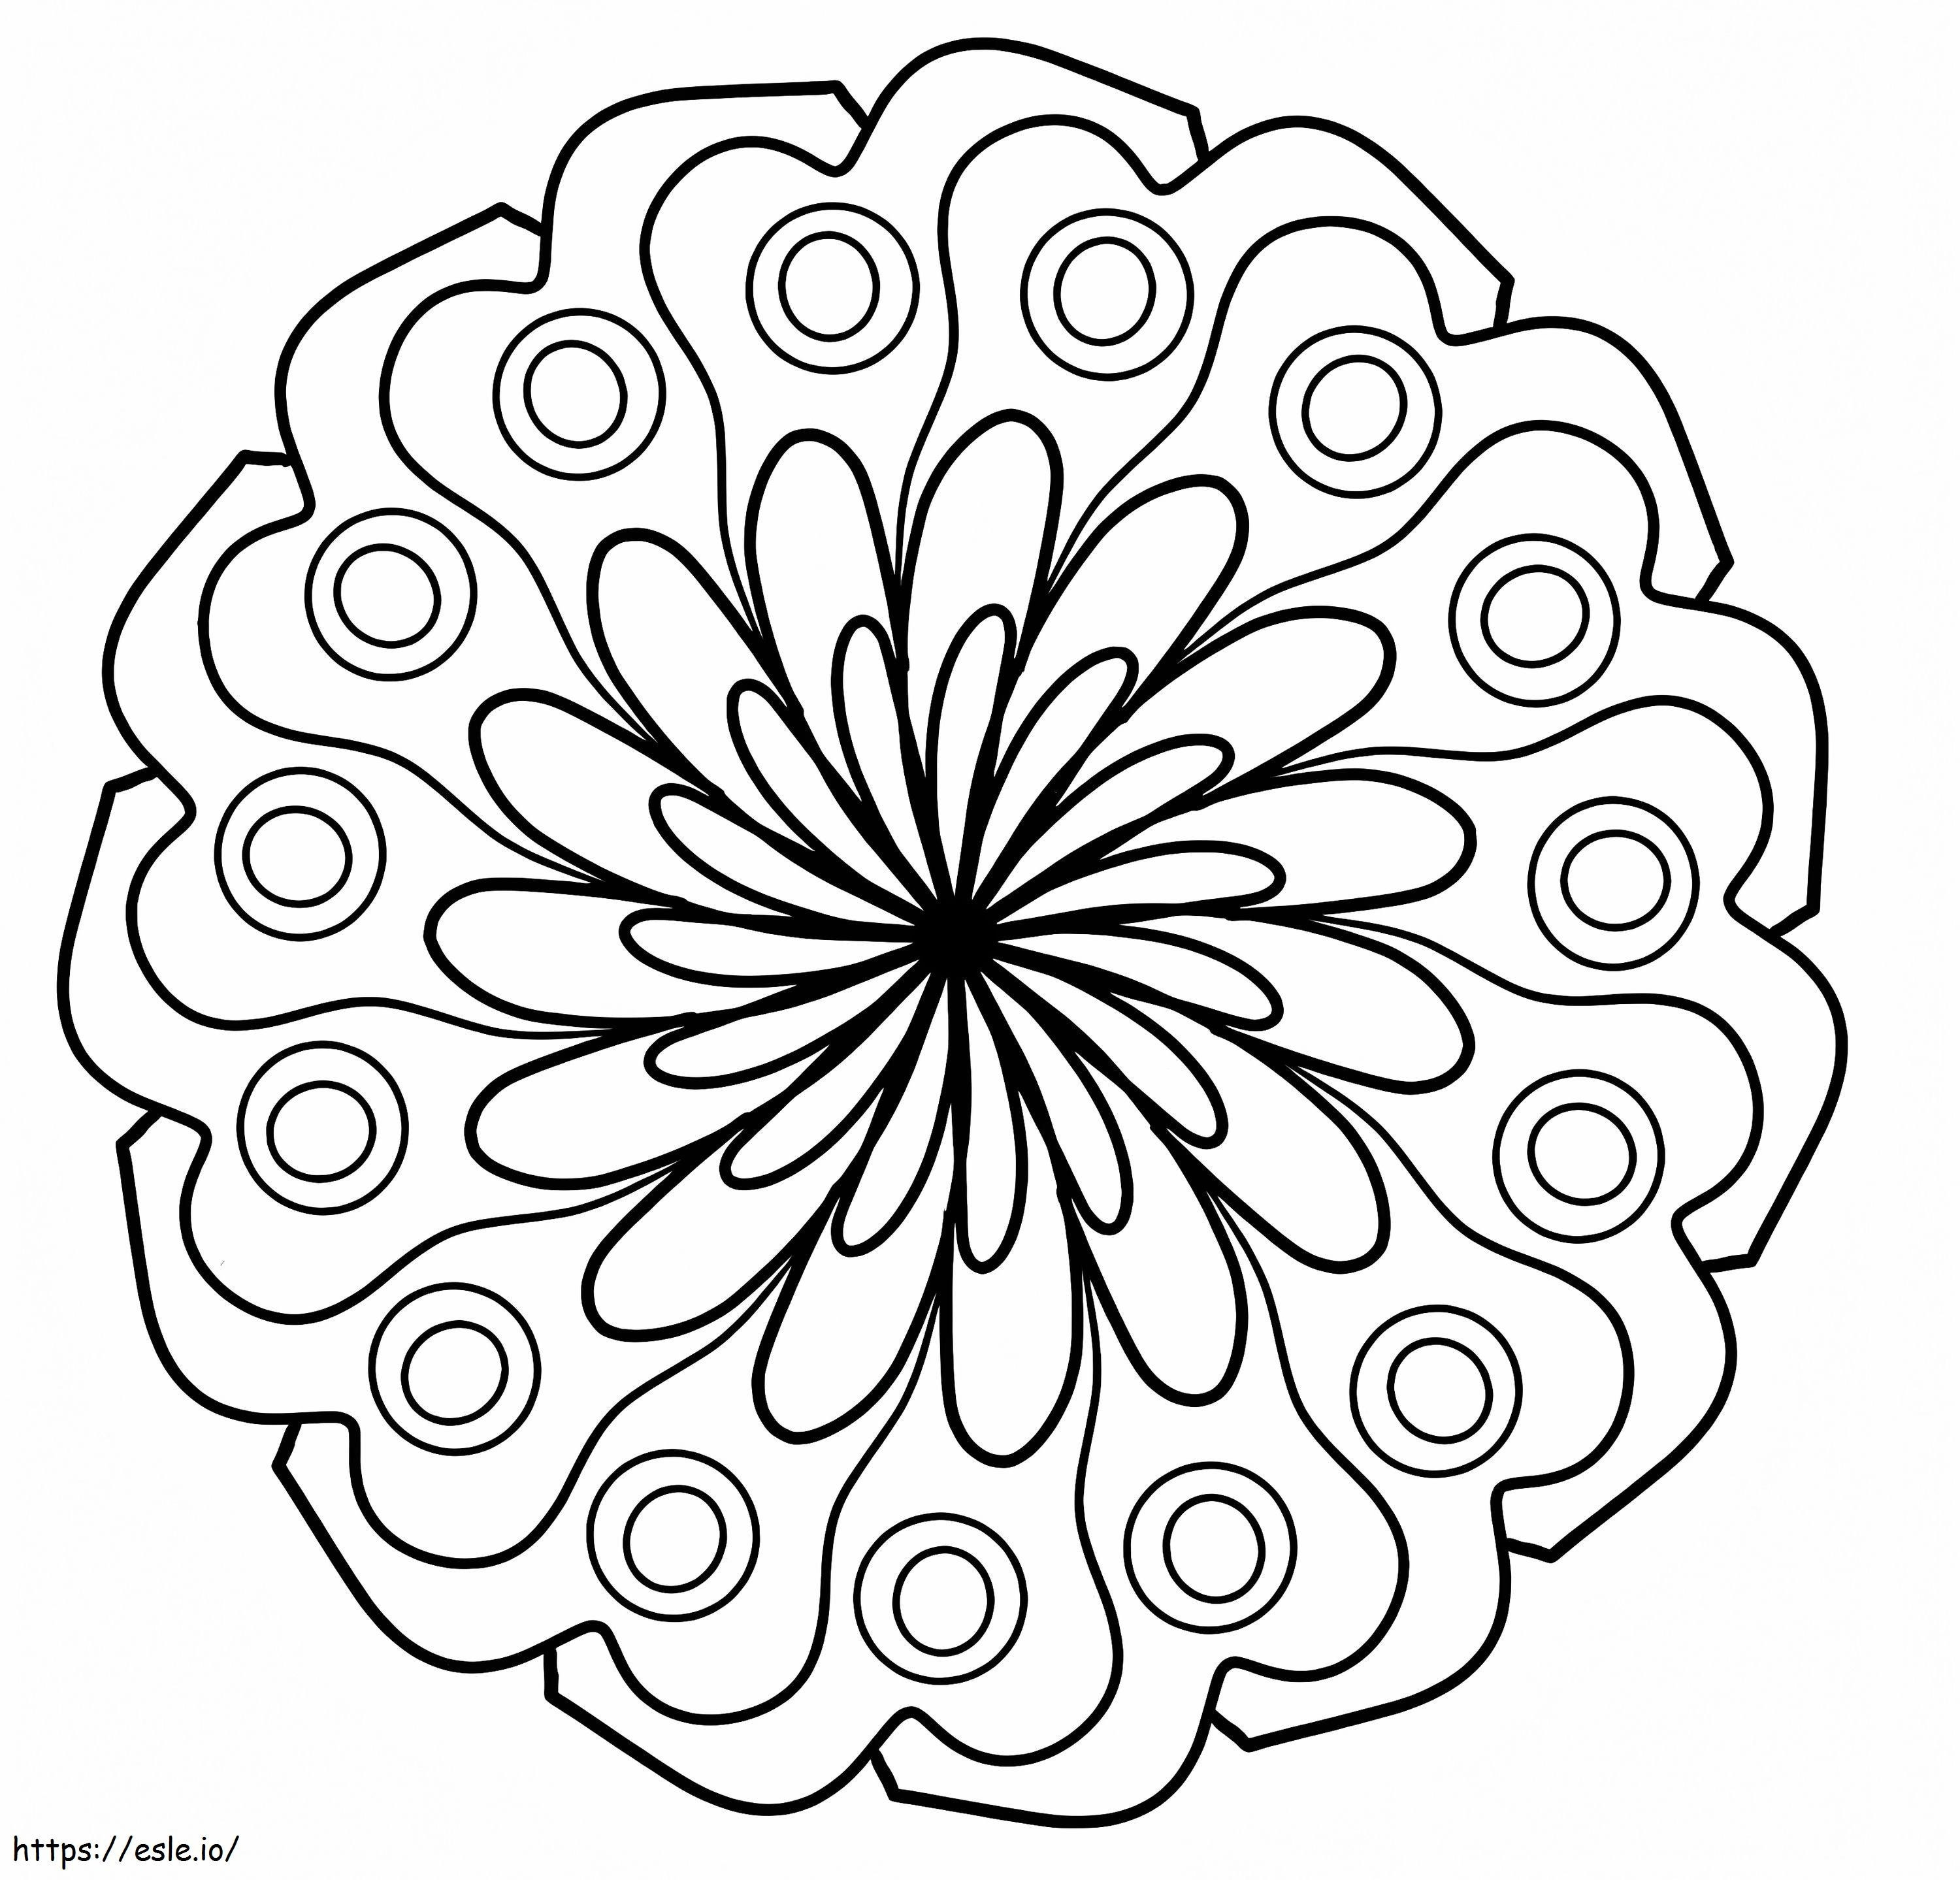 Coloriage Mandala de fleurs simples à imprimer dessin